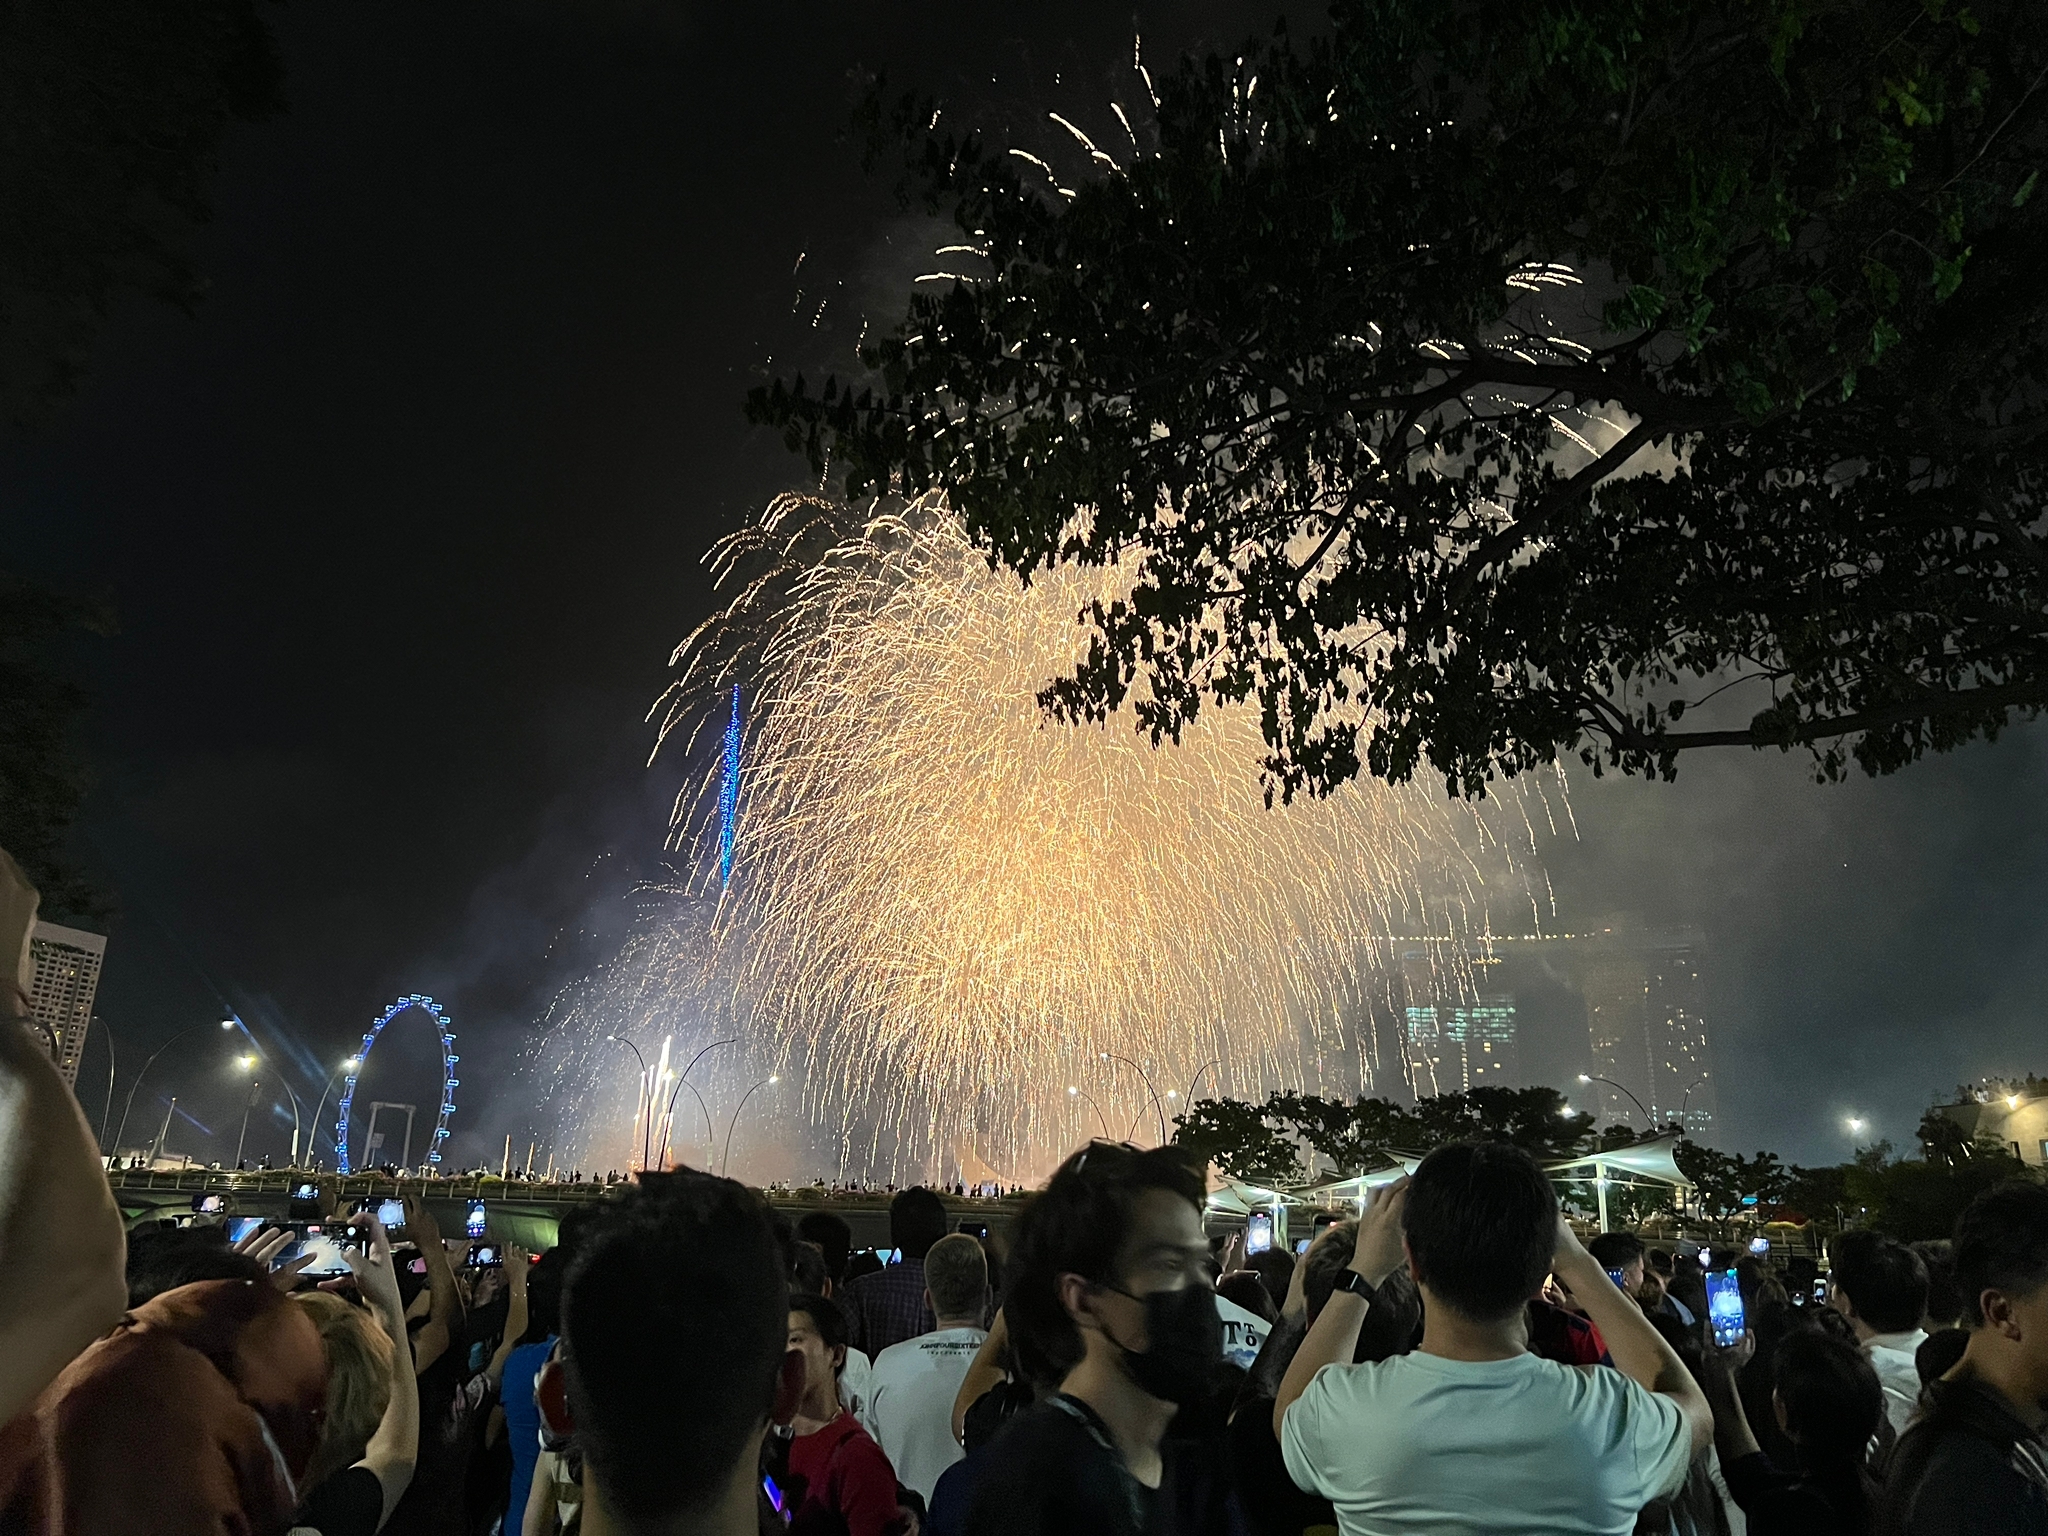 一张烟花图片。可见许多游客在滨海湾广场举起手机拍摄空中的烟花。背景是新加坡摩天轮与金沙酒店